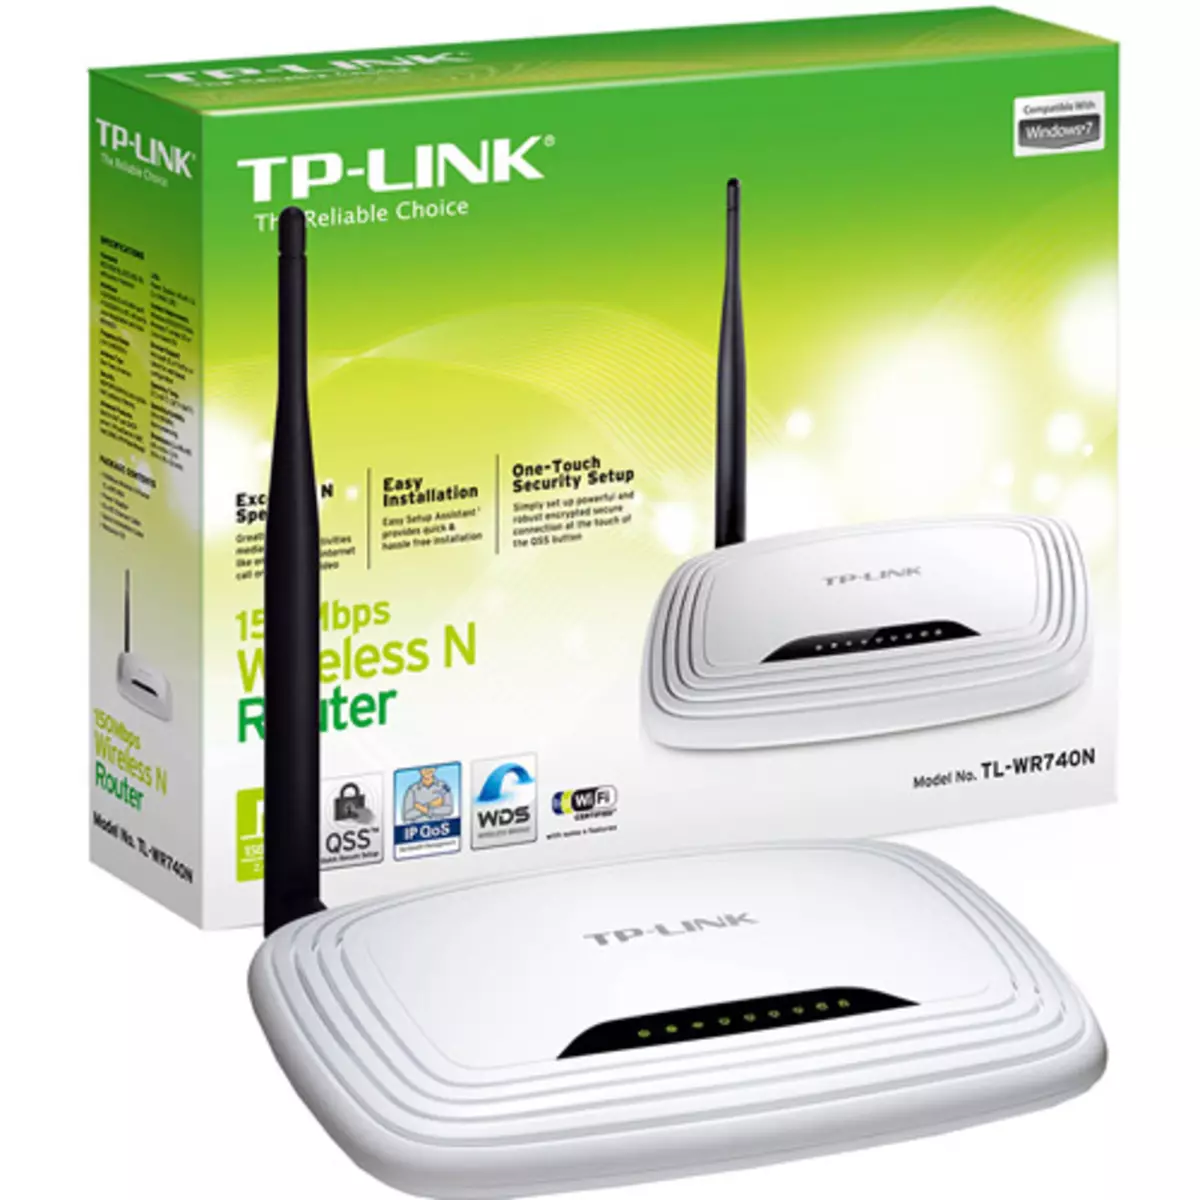 Sauniuniga mo le firmware o le TP-LINK router TL-WR740N